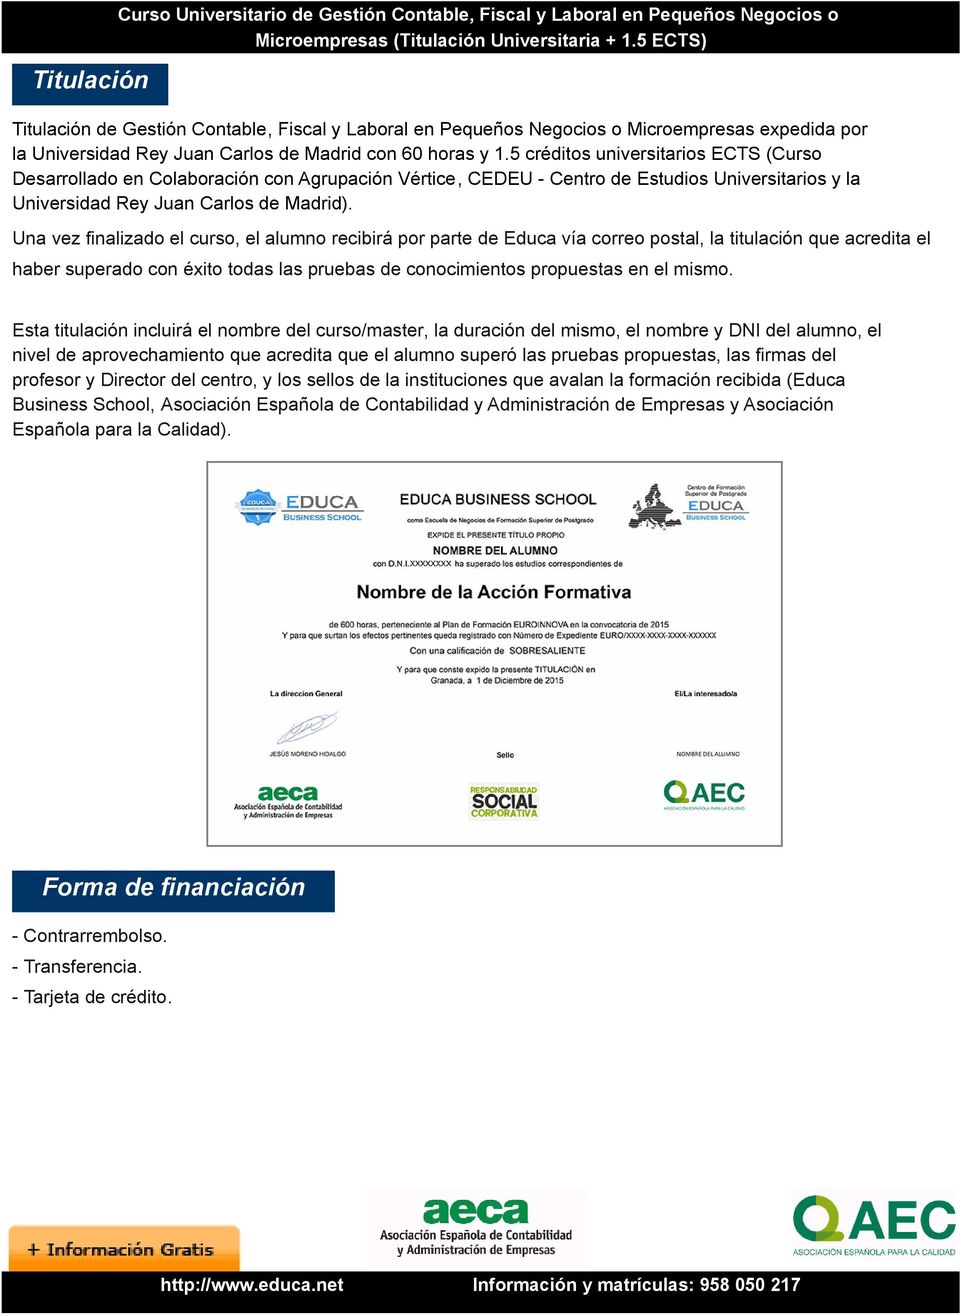 5 créditos universitarios ECTS (Curso Desarrollado en Colaboración con Agrupación Vértice, CEDEU - Centro de Estudios Universitarios y la Universidad Rey Juan Carlos de Madrid).